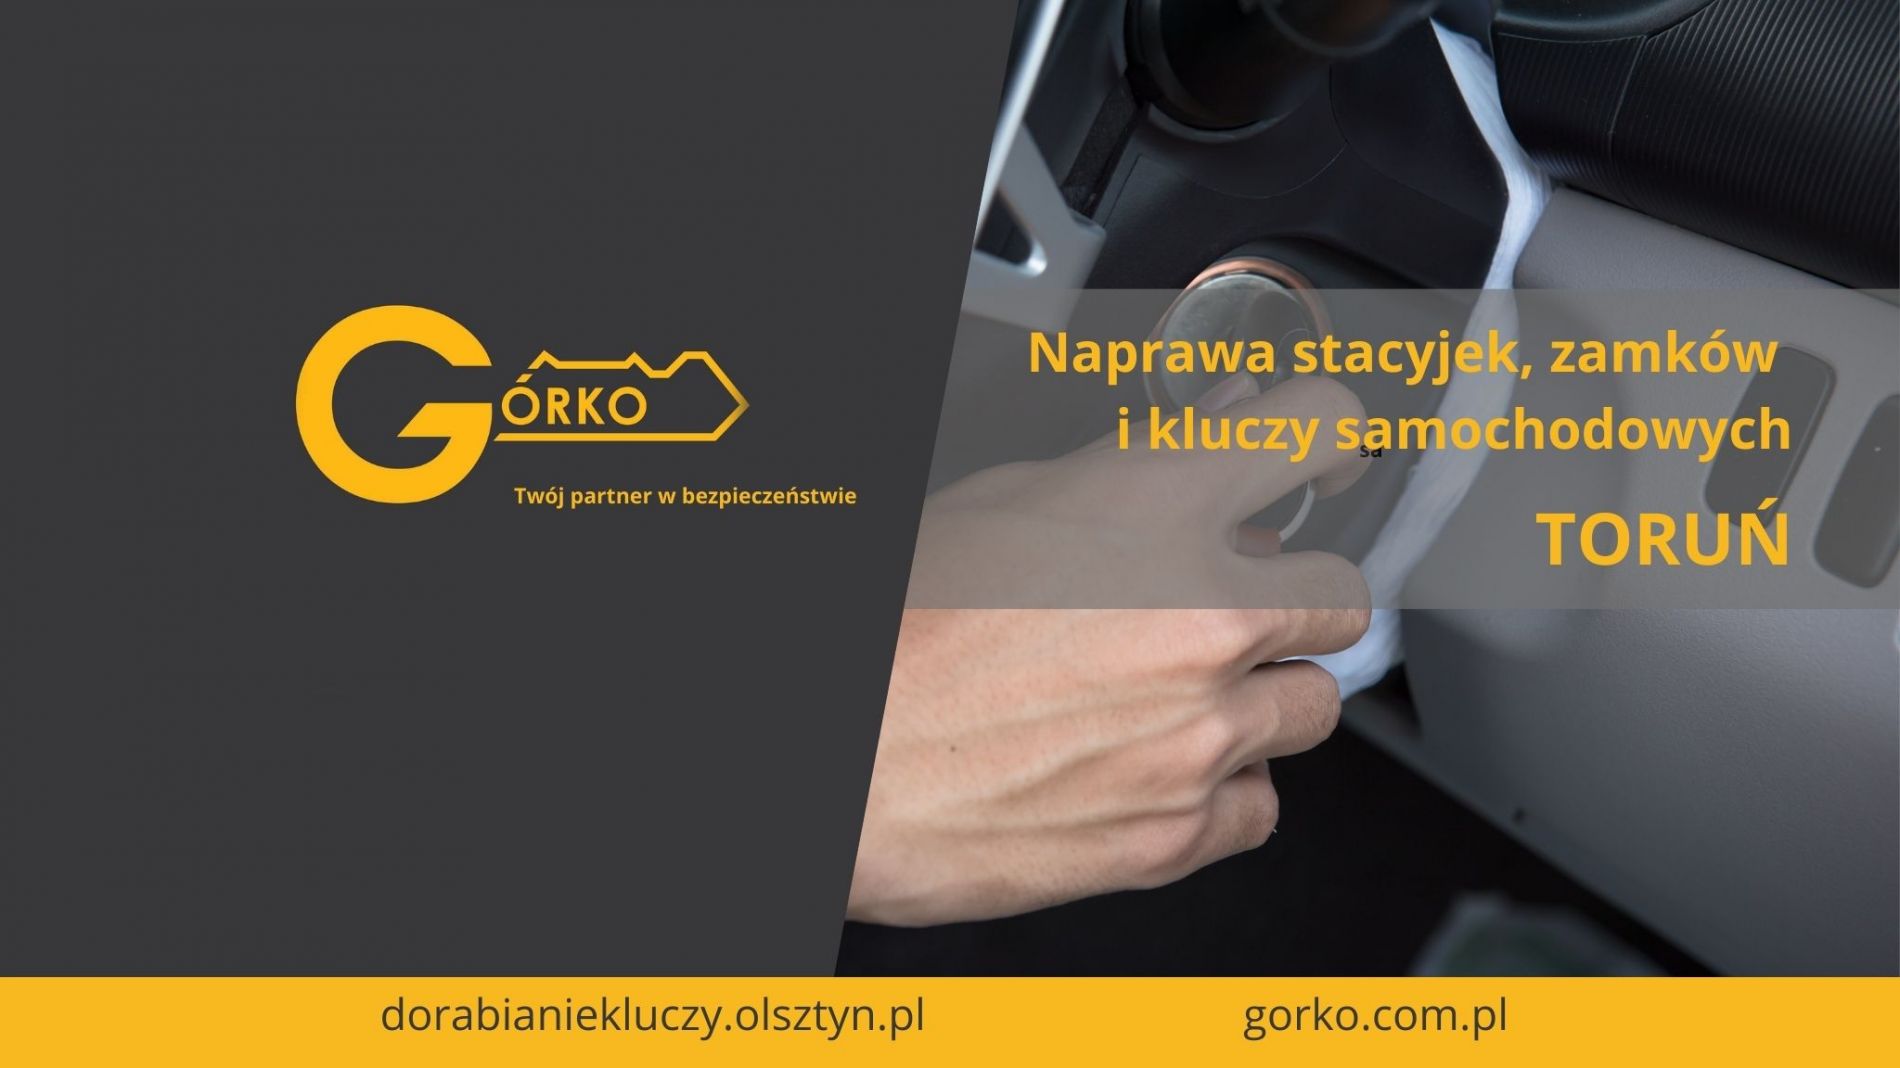 Naprawa stacyjek, zamków i kluczy samochodowych – Toruń (Usługa zdalna)